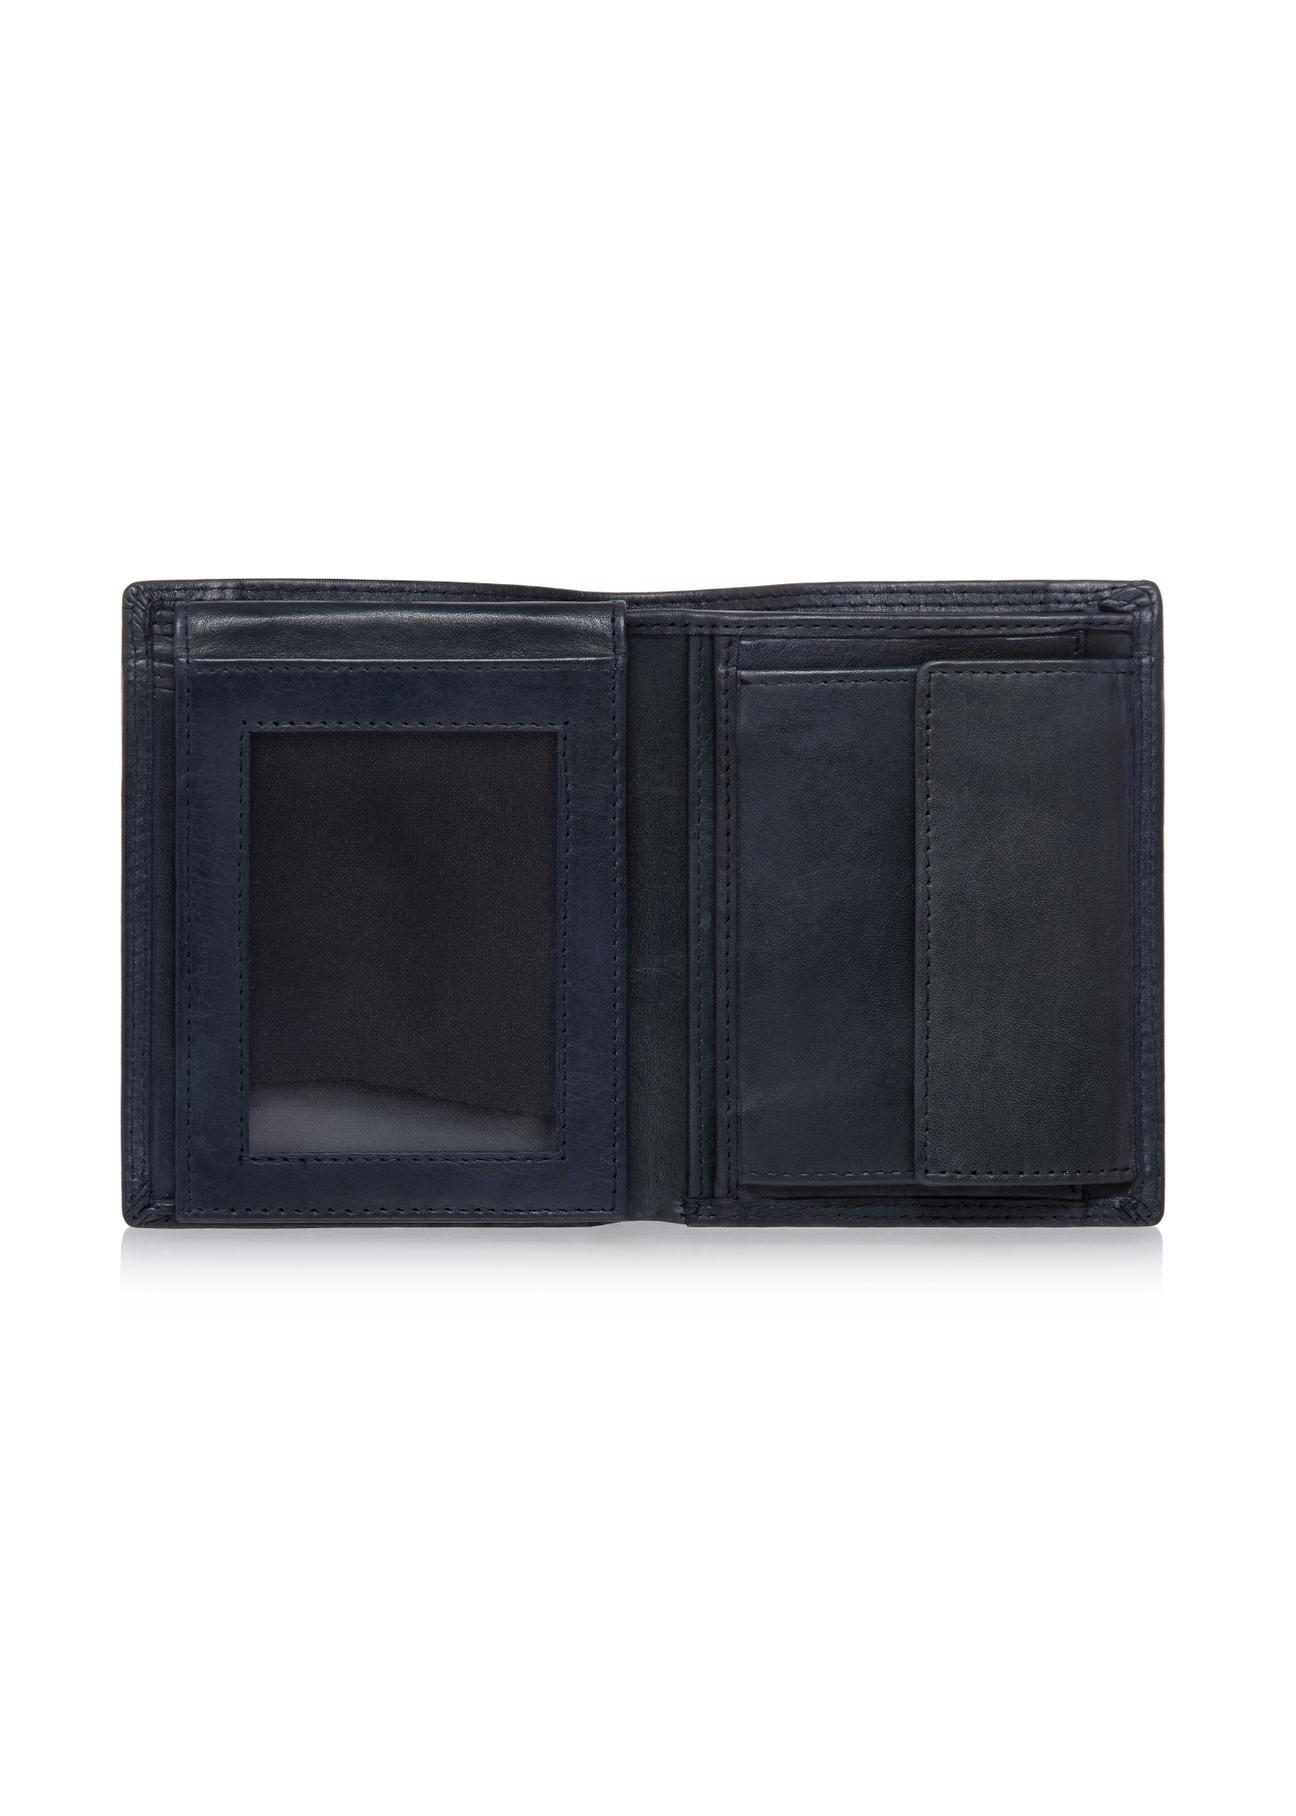 Granatowy skórzany portfel męski PORMS-0464A-69(W23)